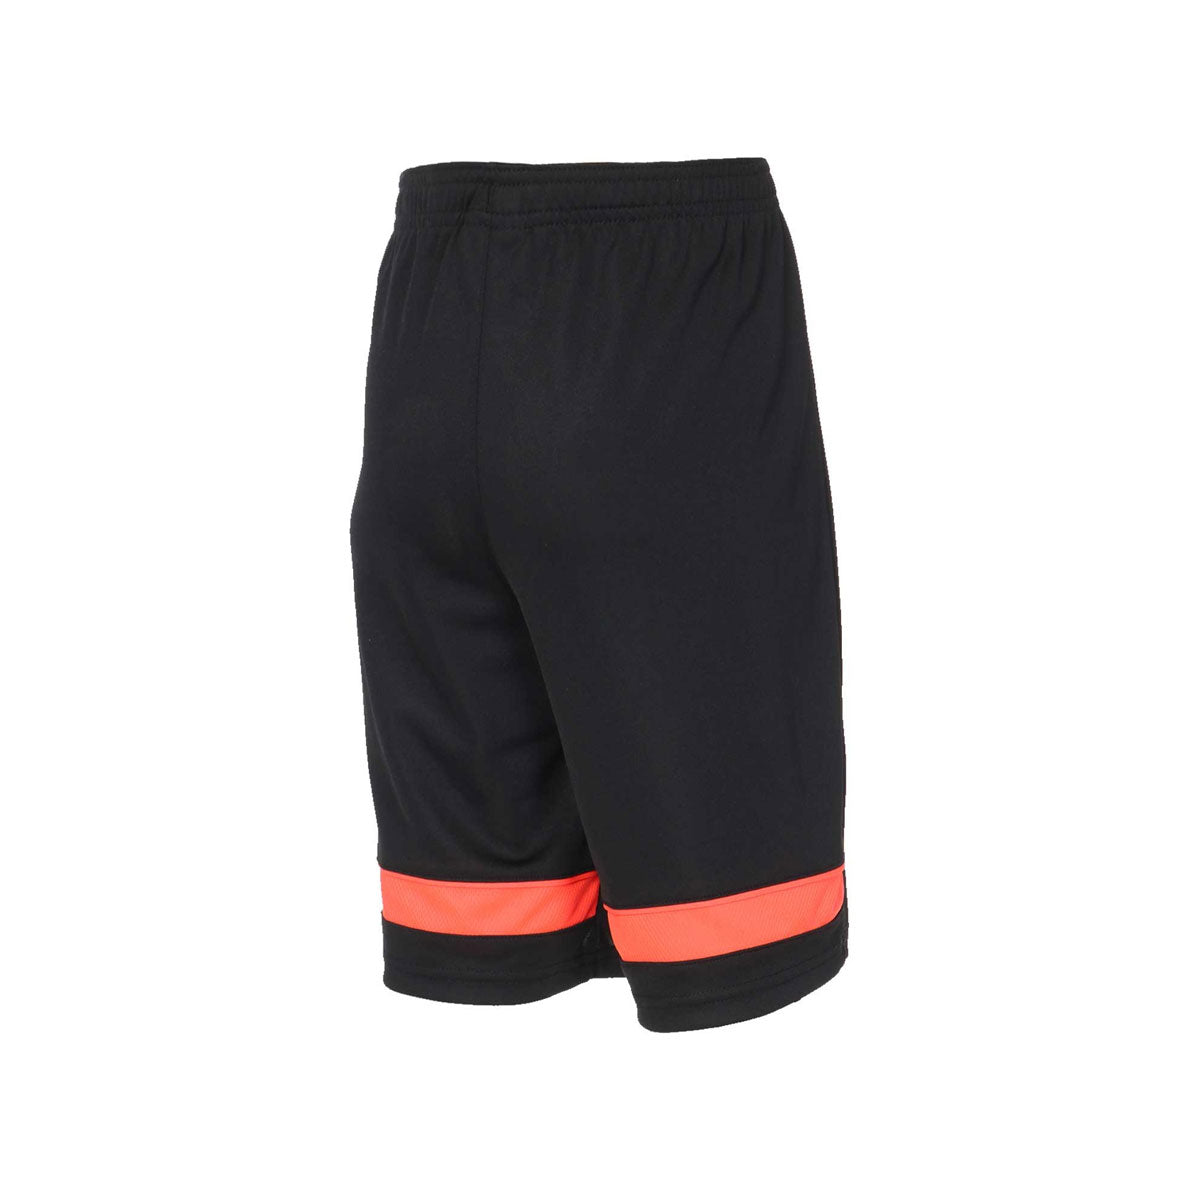 Nike Boy's Dri-FIT Academy Football Shorts